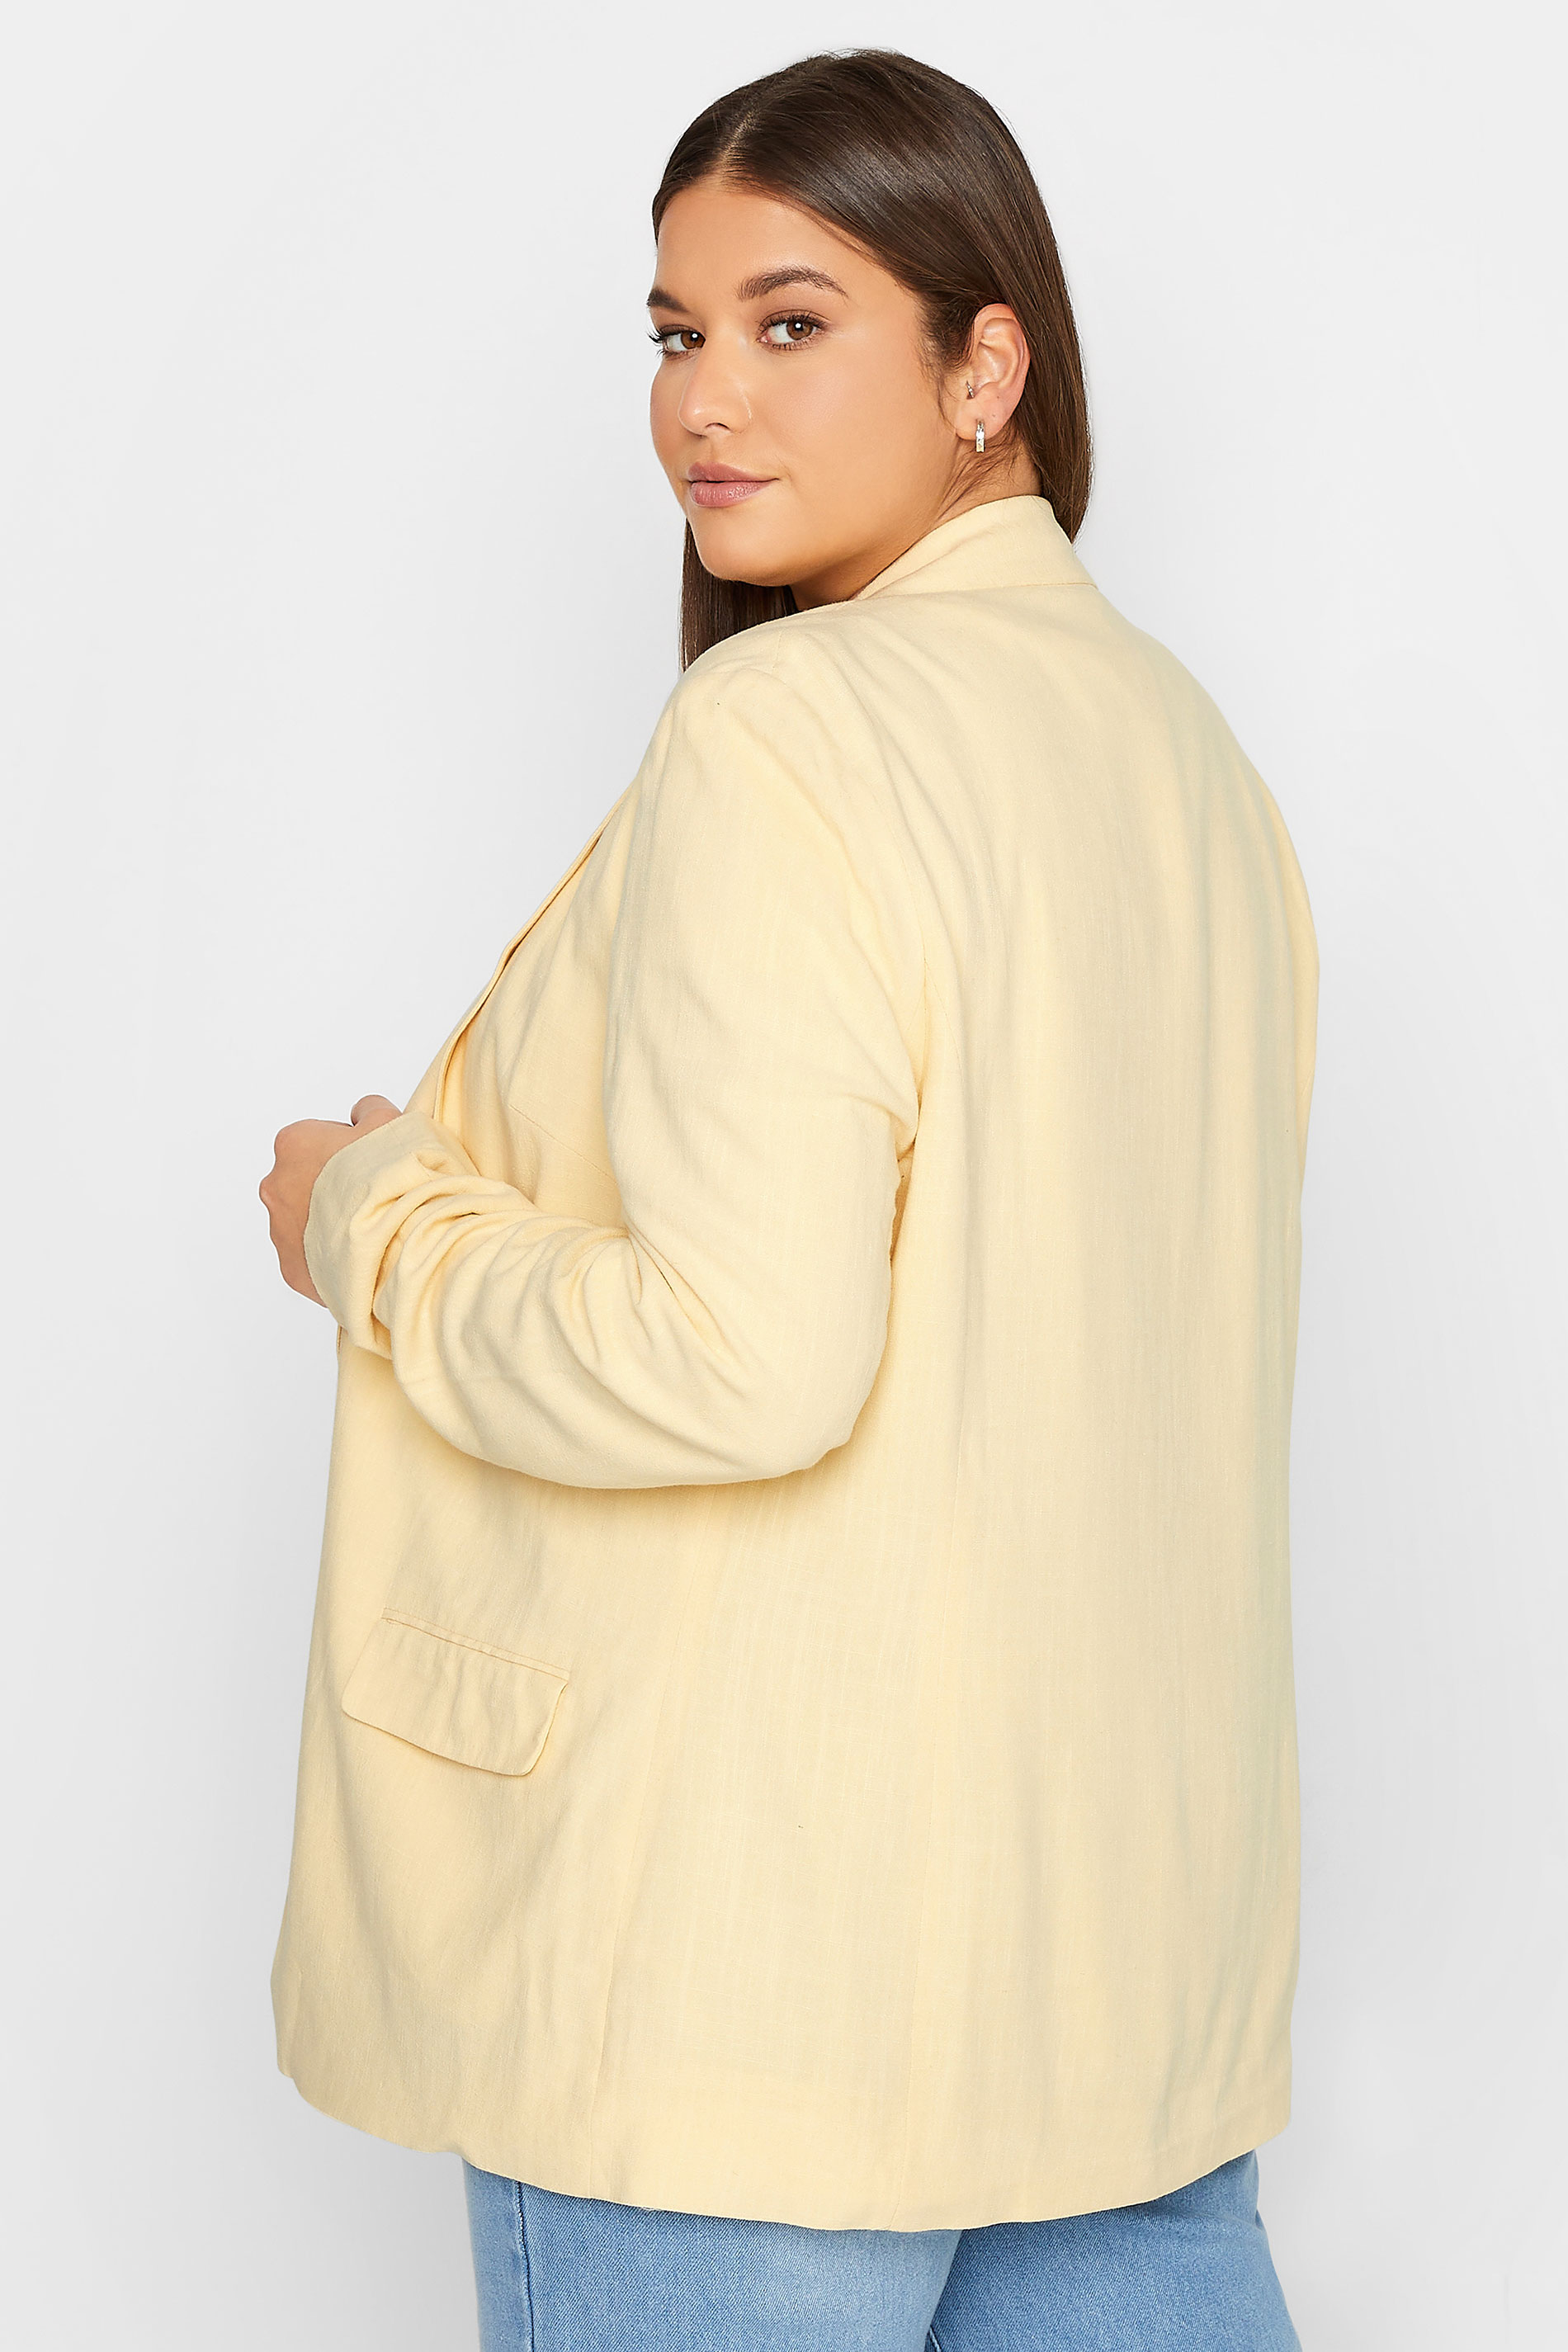 LTS Tall Women's Lemon Yellow Linen Look Blazer | Long Tall Sally  3